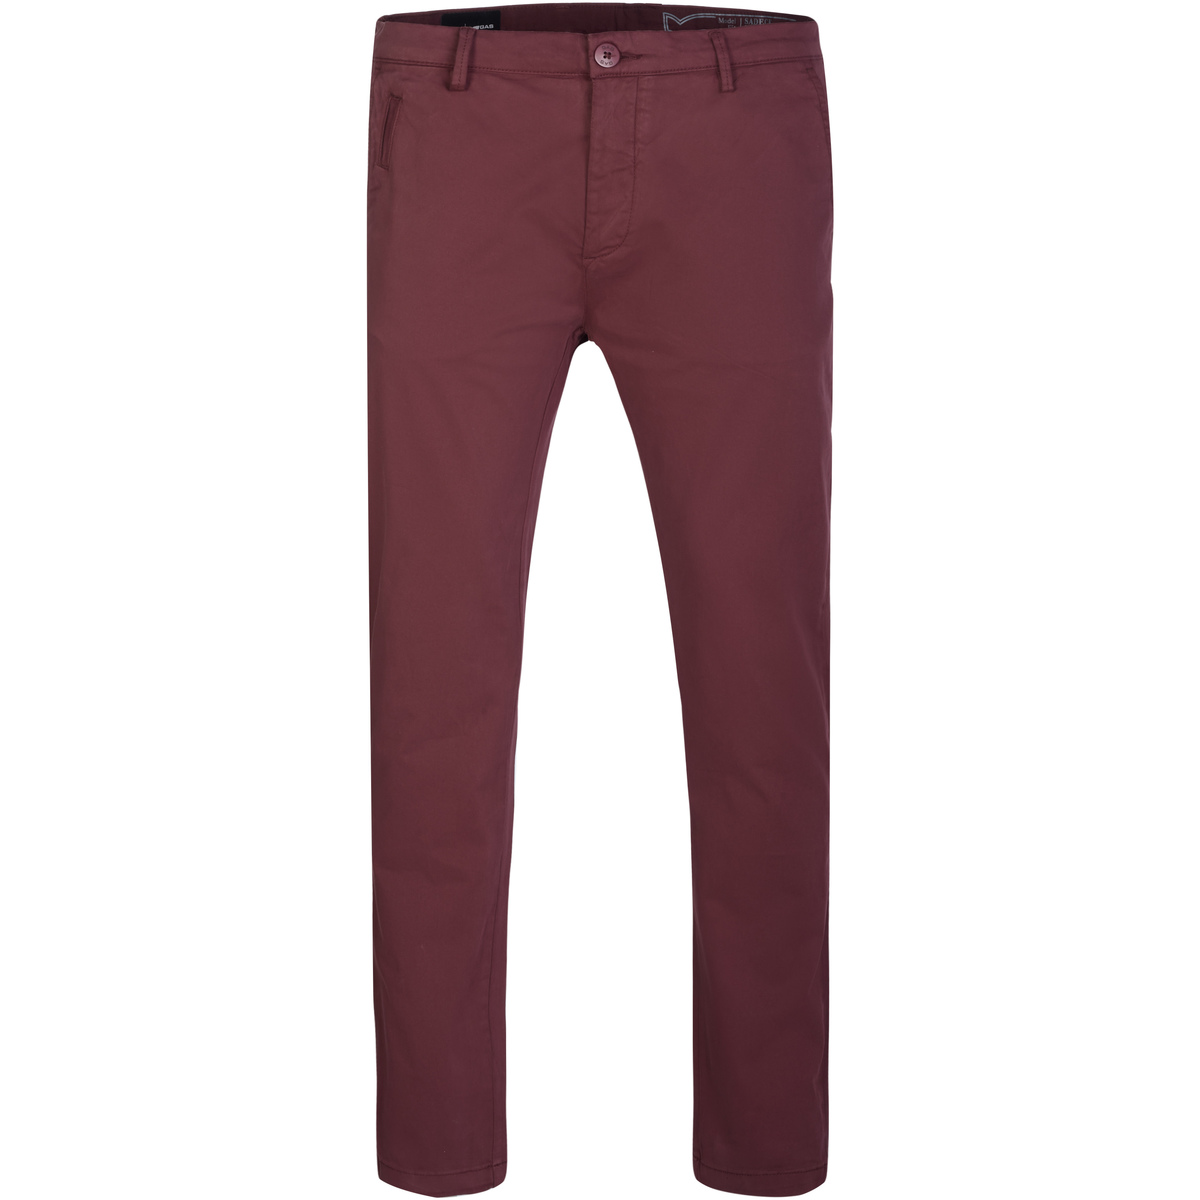 Vêtements Homme Donnez une nouvelle vie à votre dressing avec NewLife Pantalon Rouge